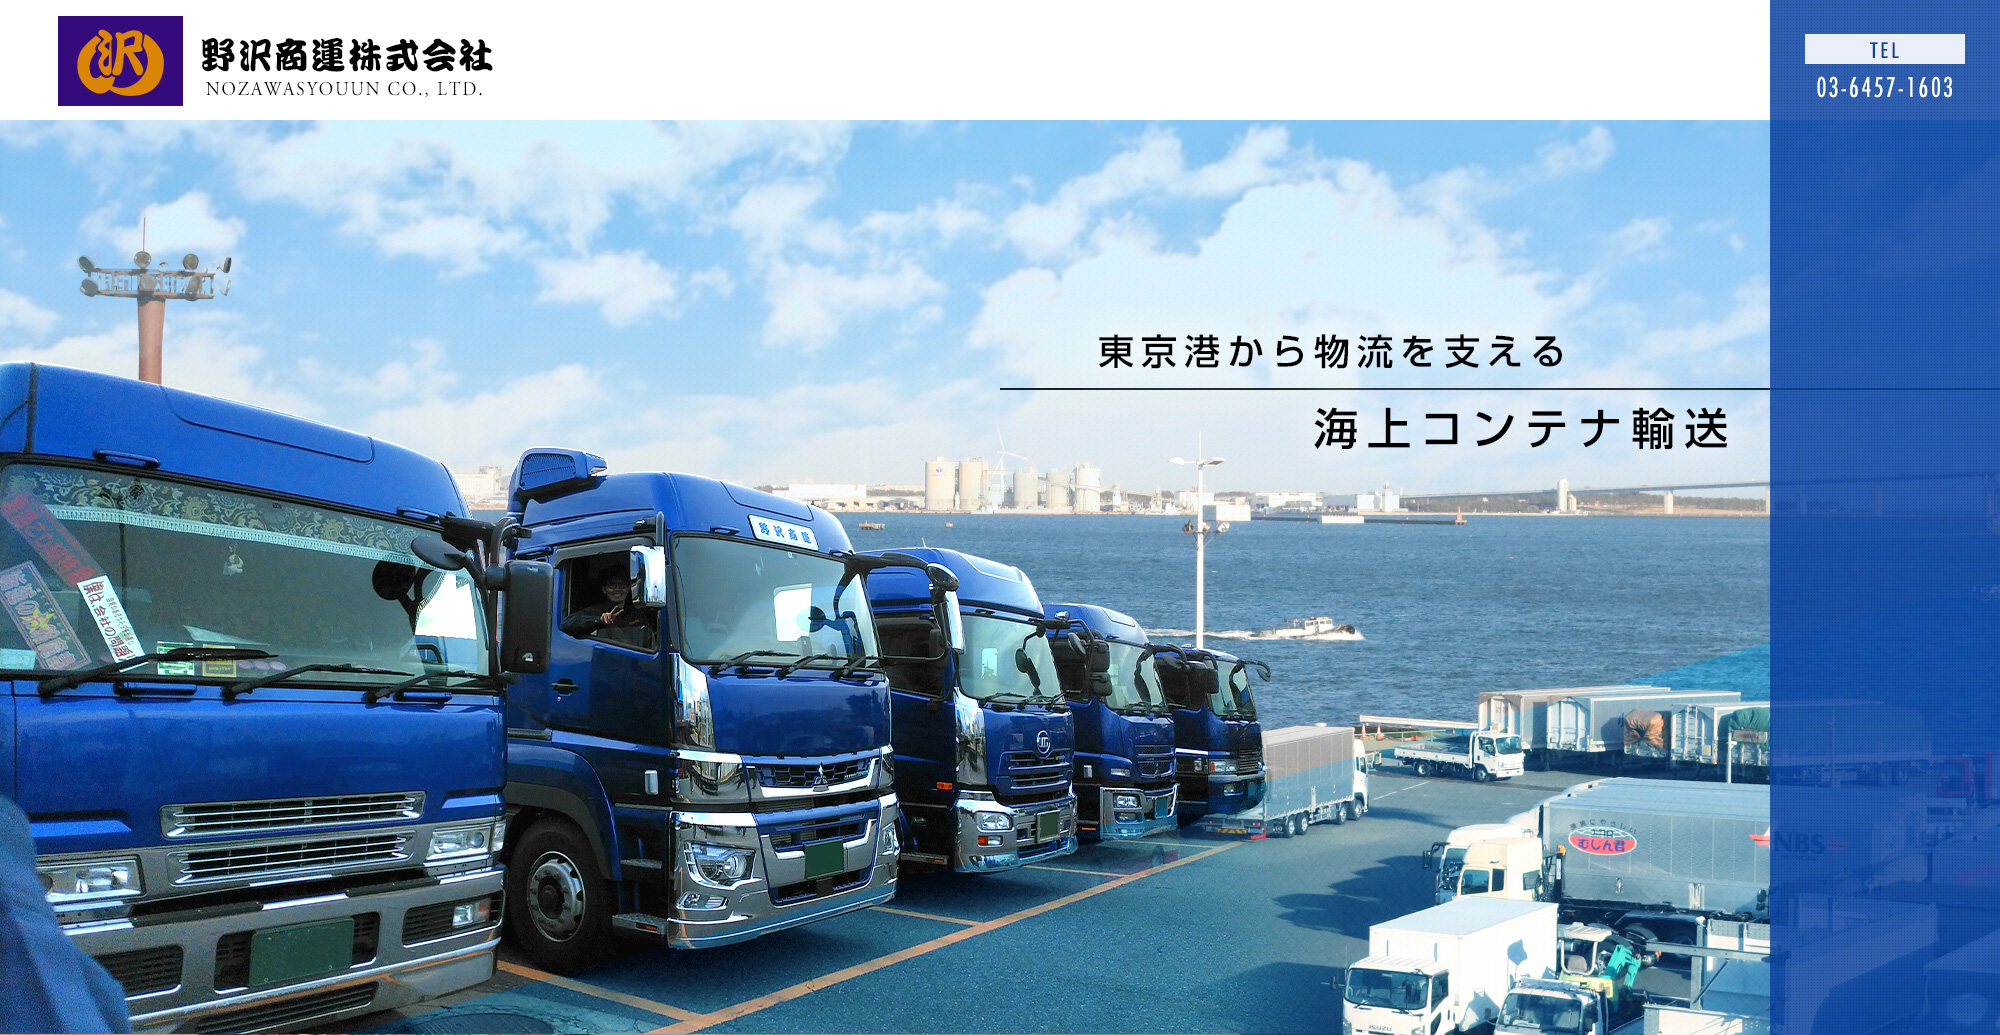 東京港から物流を支える 海上コンテナ輸送